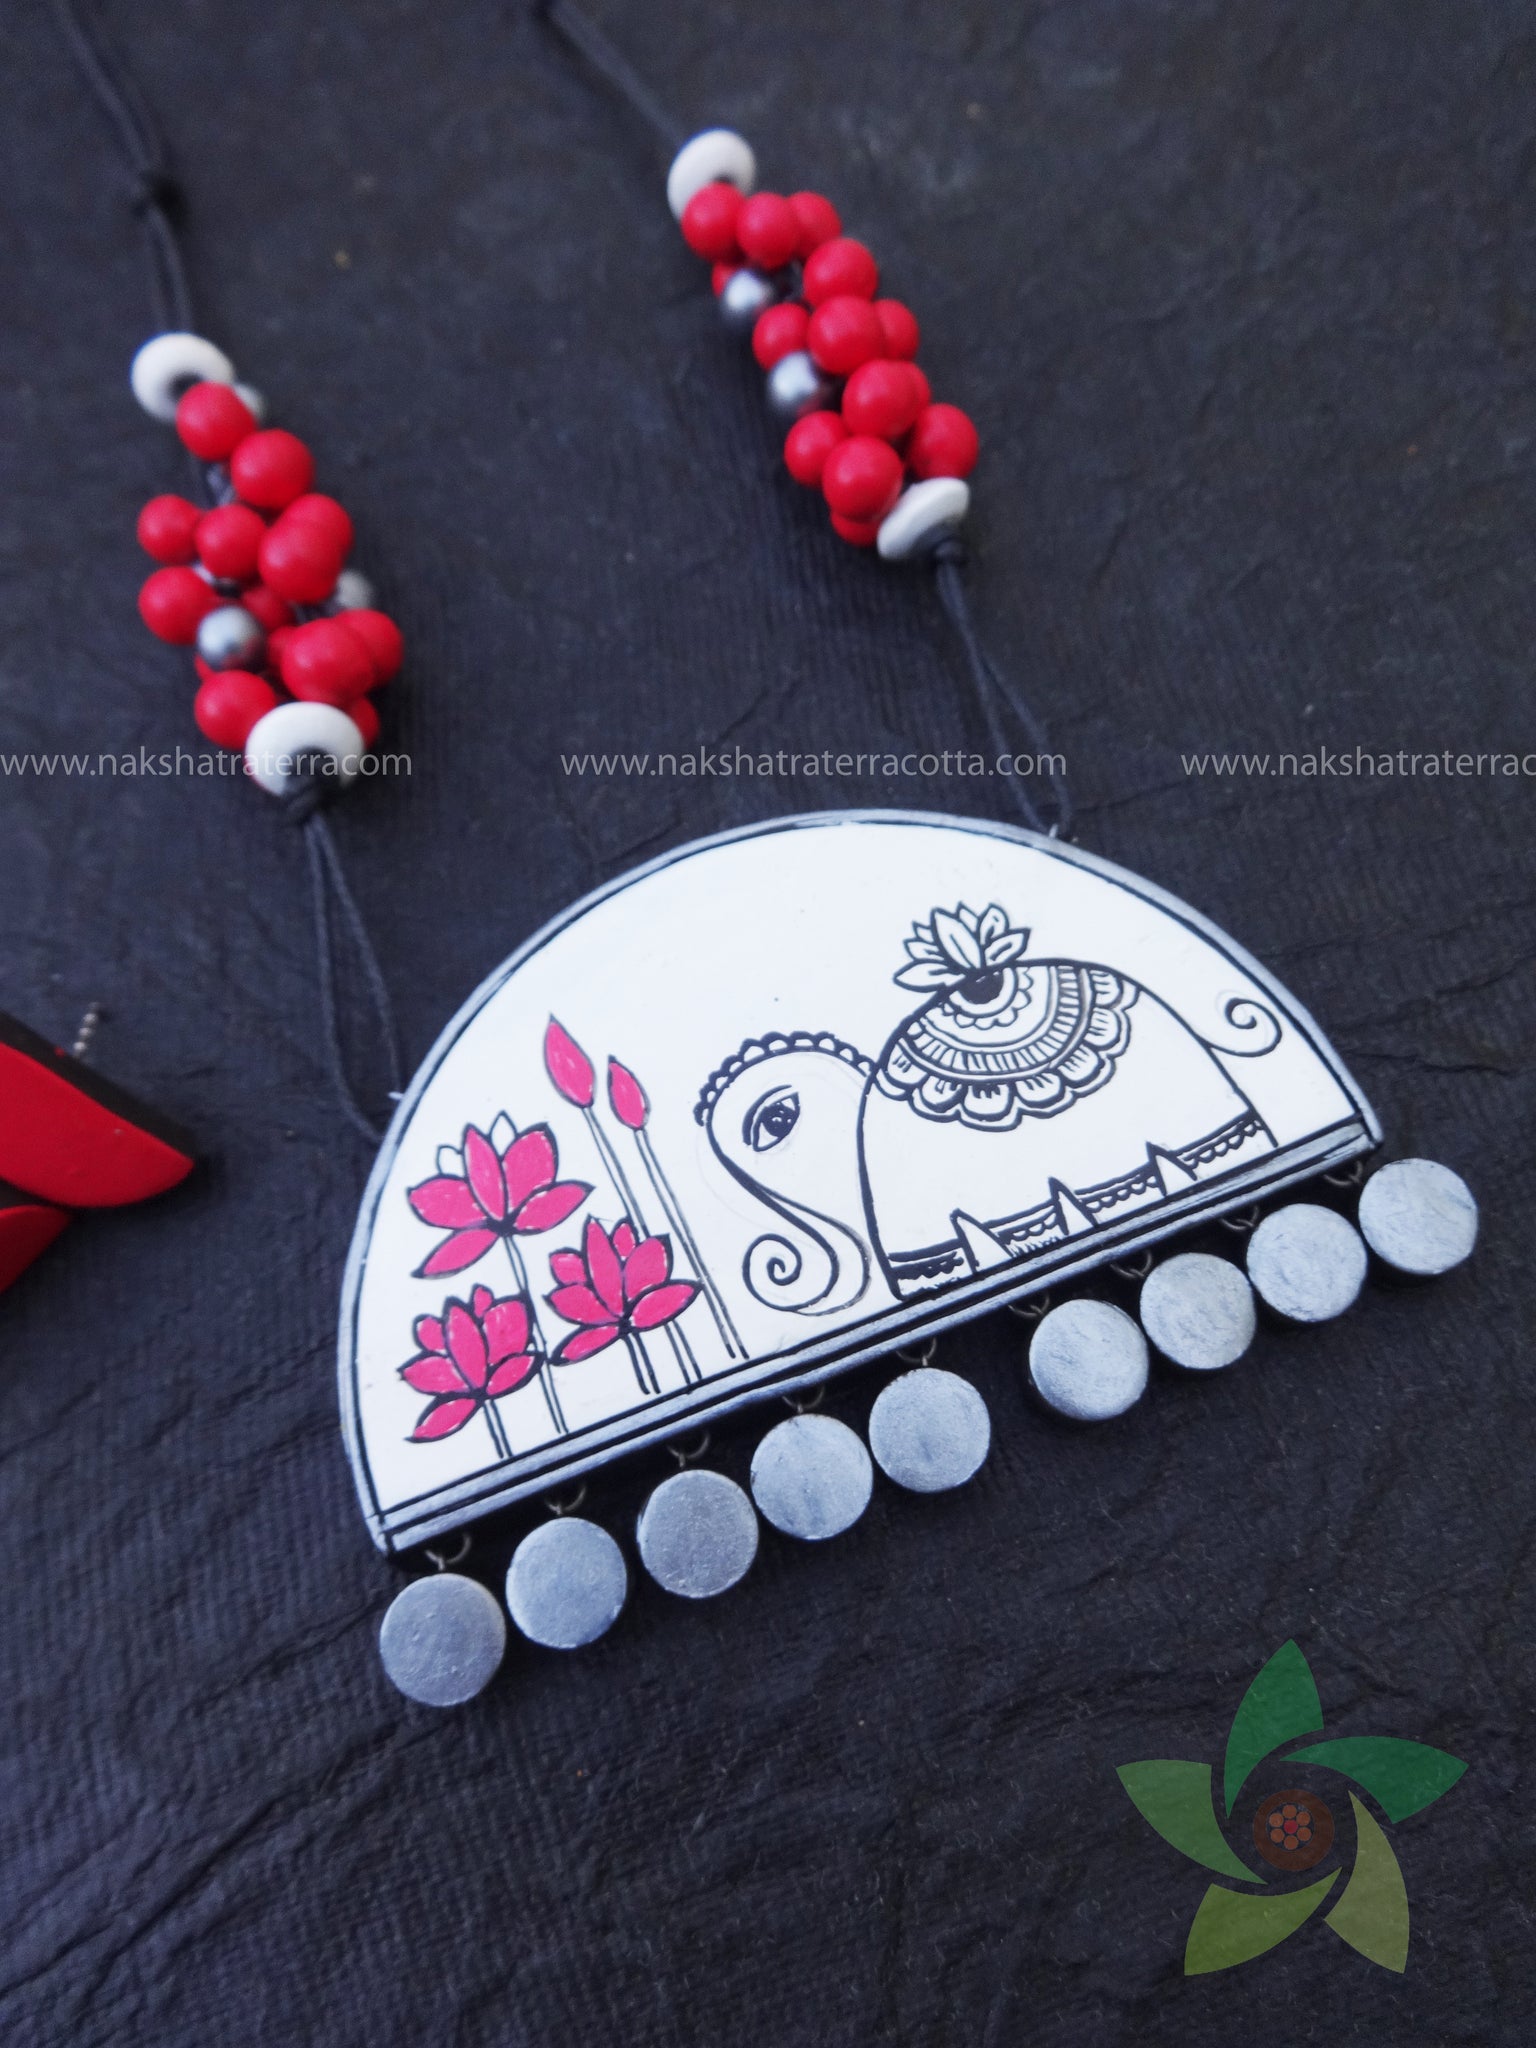 Elephant lotus casual wear terracotta jewellery set